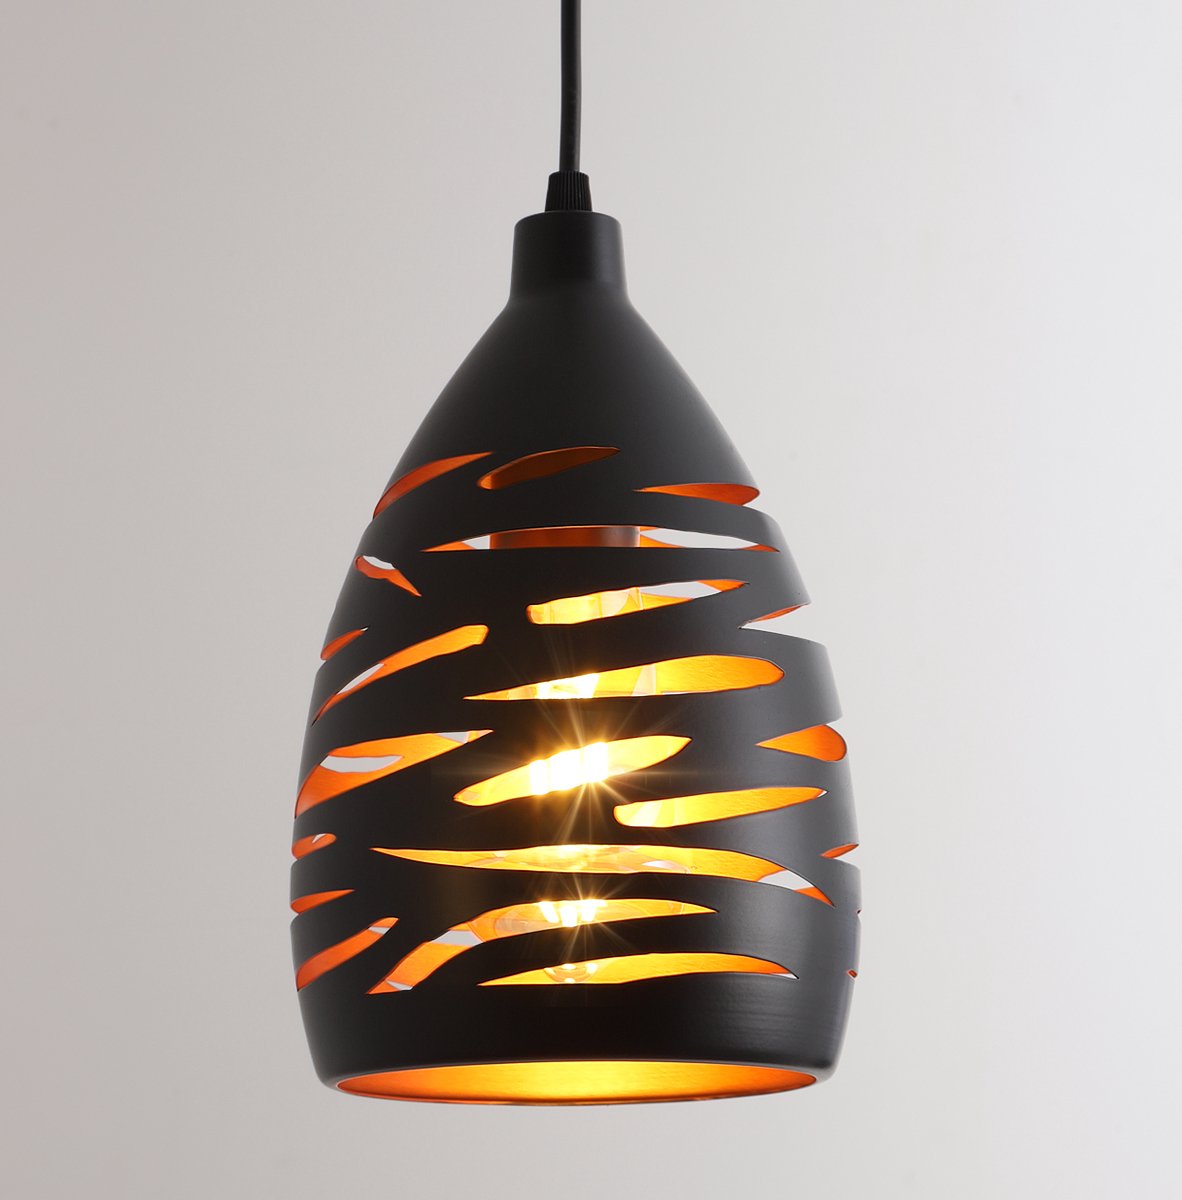 Delaveek-Vintage industriële Hanglamp - Metalen lantaarnlamp - Zwart - E27 Lampen